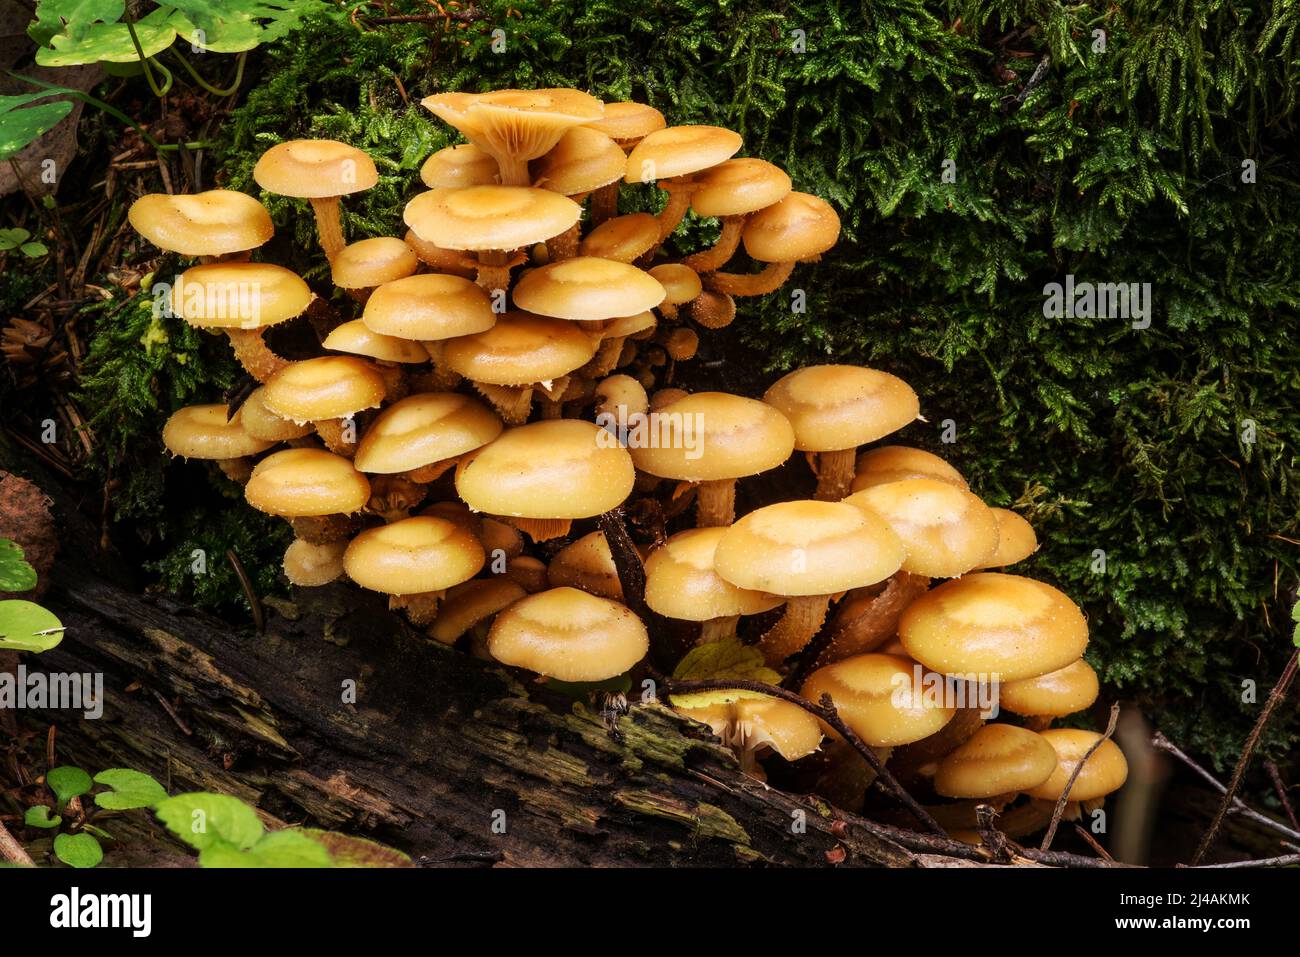 Wildtiere in Europa - essbare und ungenießbare Pilze, die im Wald wachsen. Stockfoto